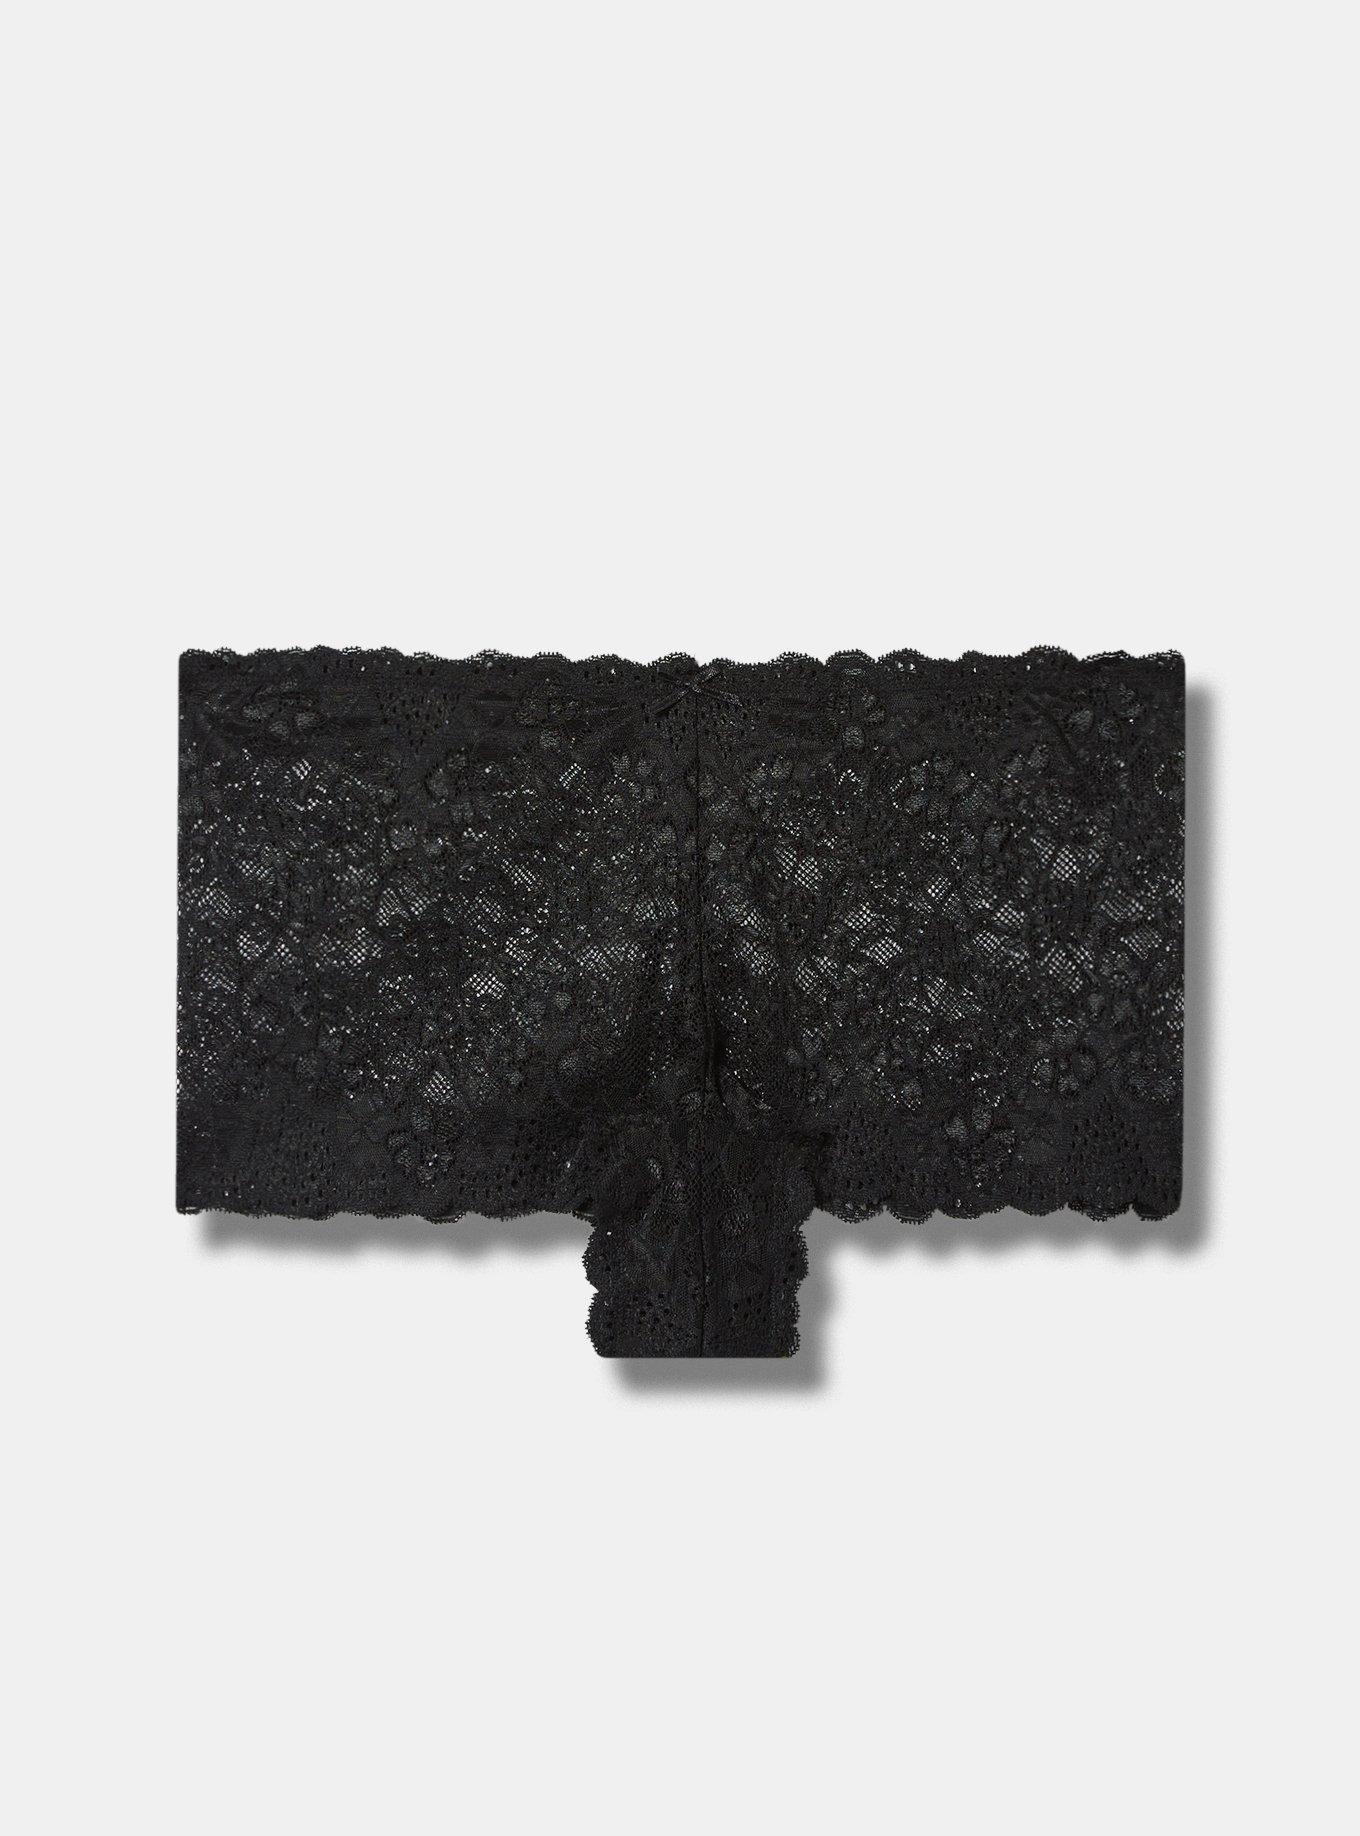 Black Lace French Knickers  Handmade Lingerie, Sleepwear